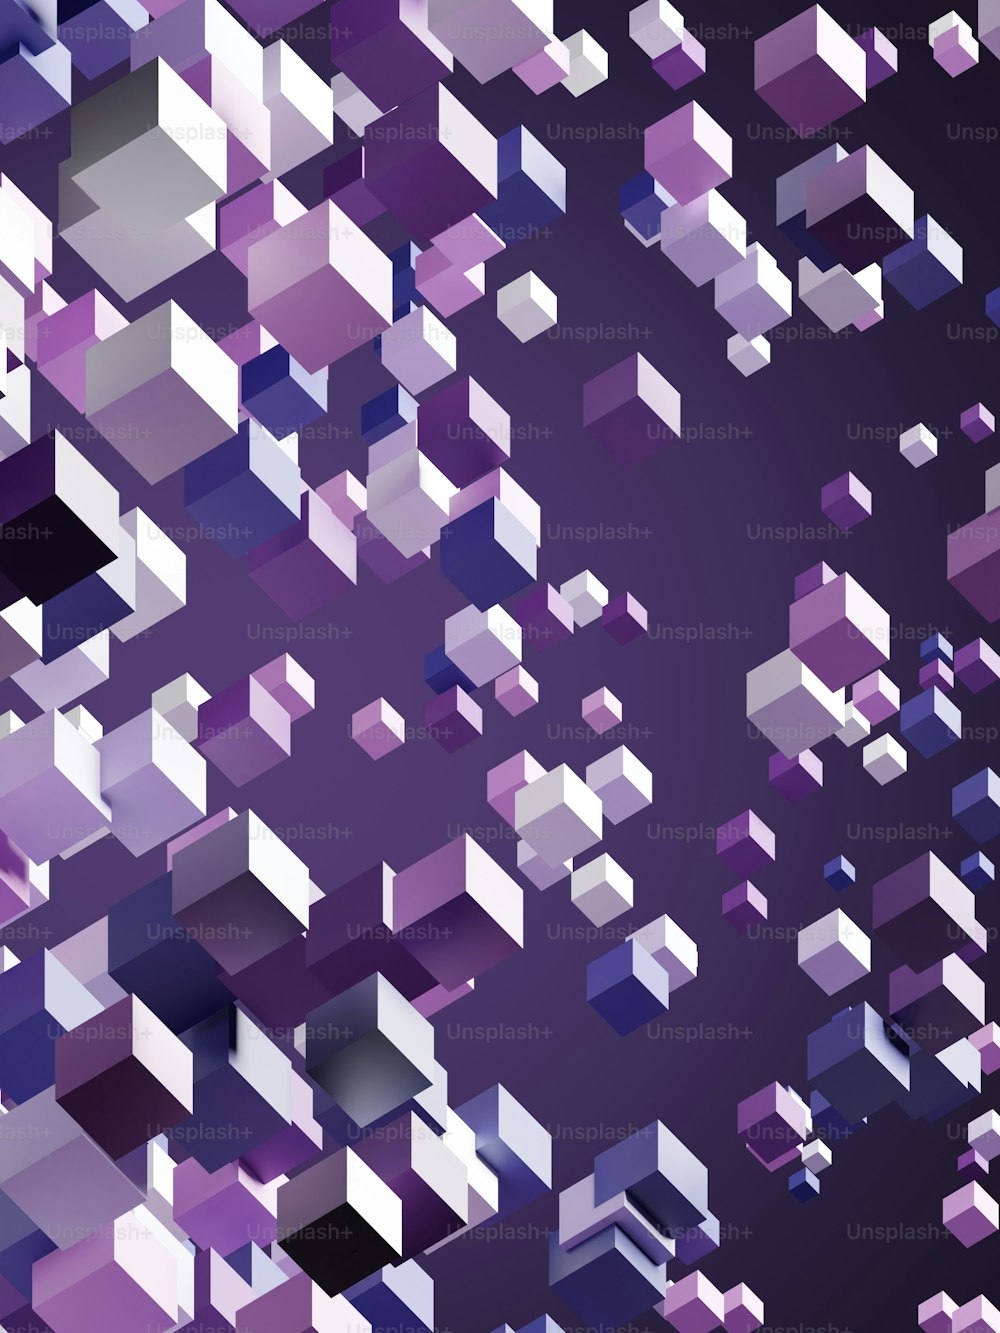 Un fond violet abstrait avec des carrés et des rectangles